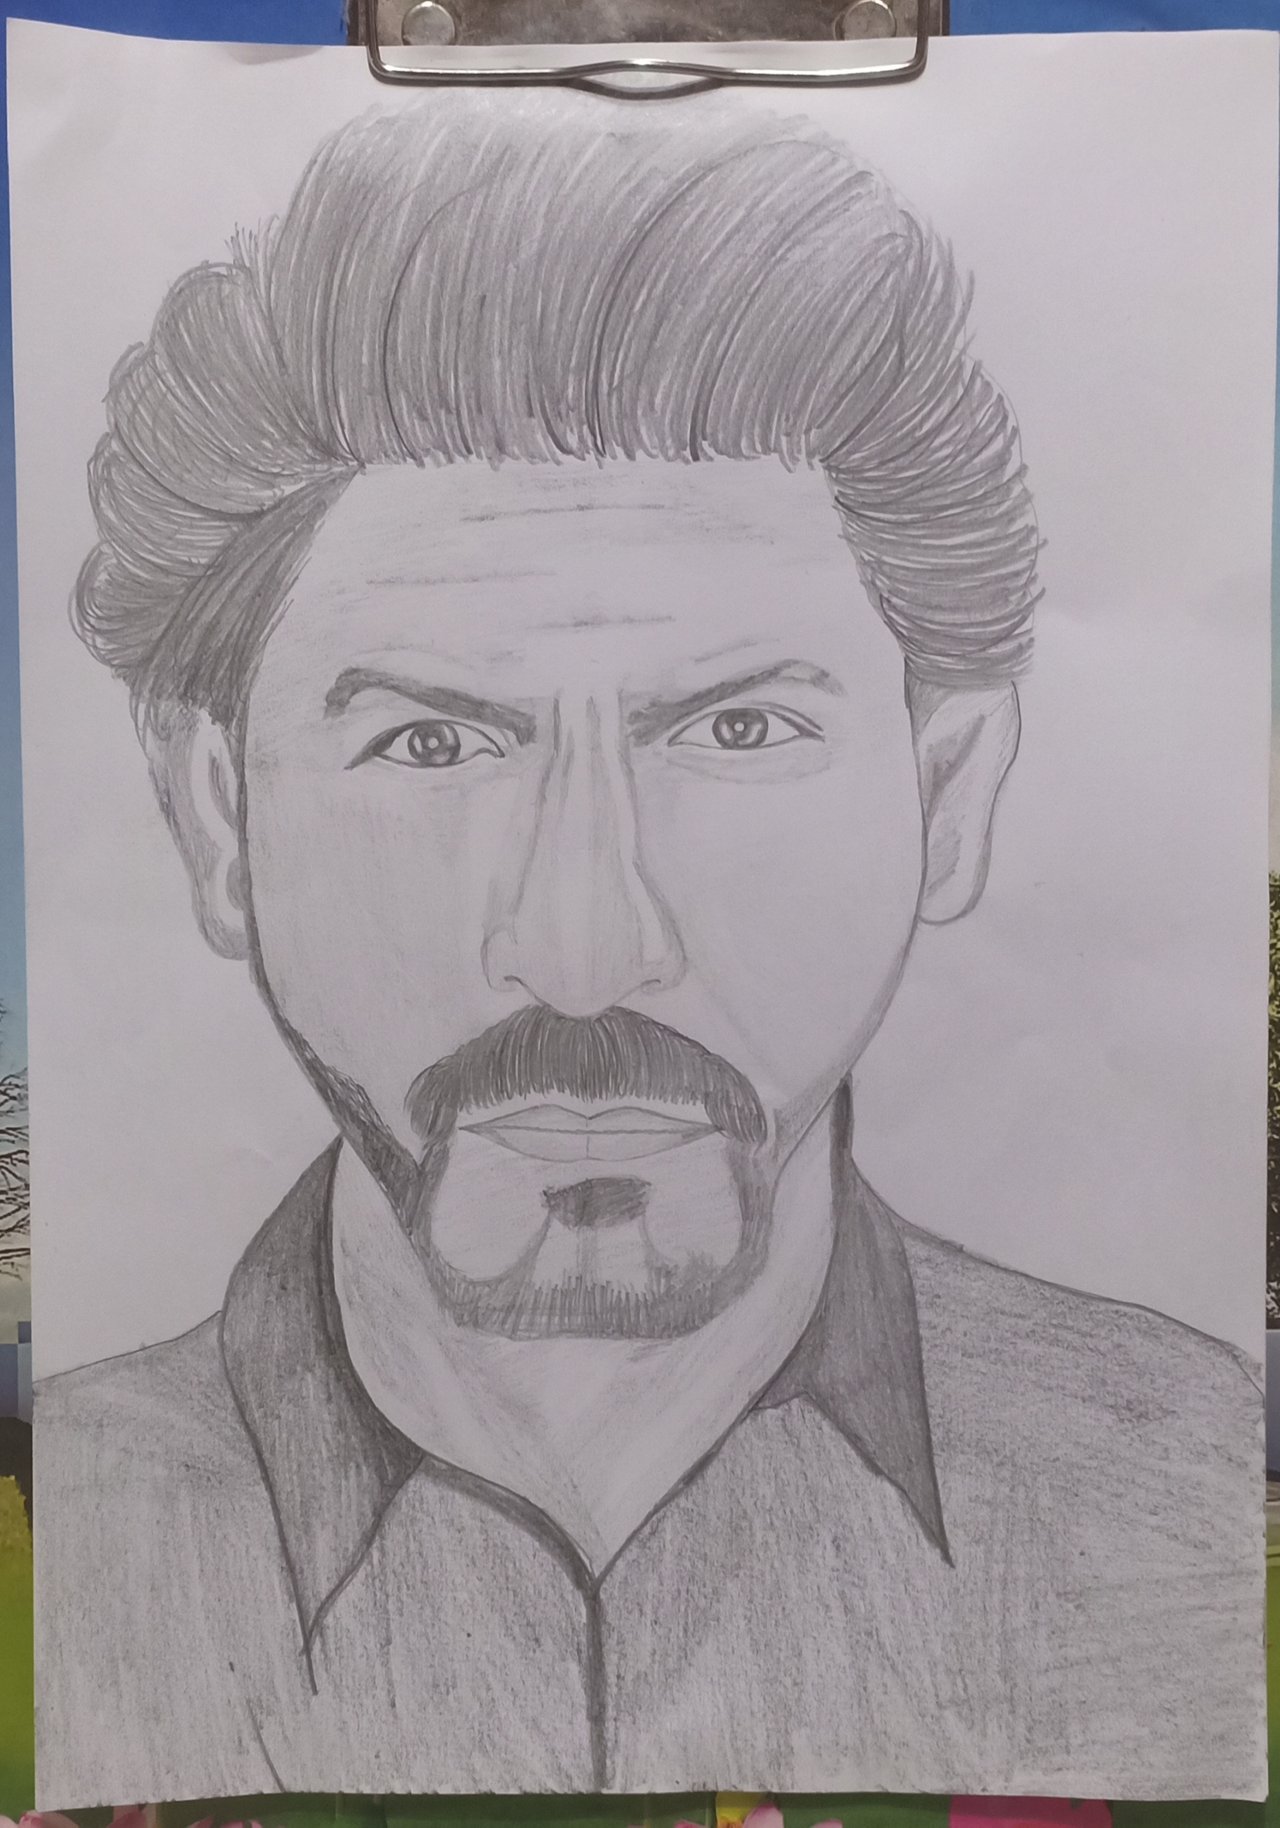 49 Sketch Of SRK ideas  cool drawings shahrukh khan fan art